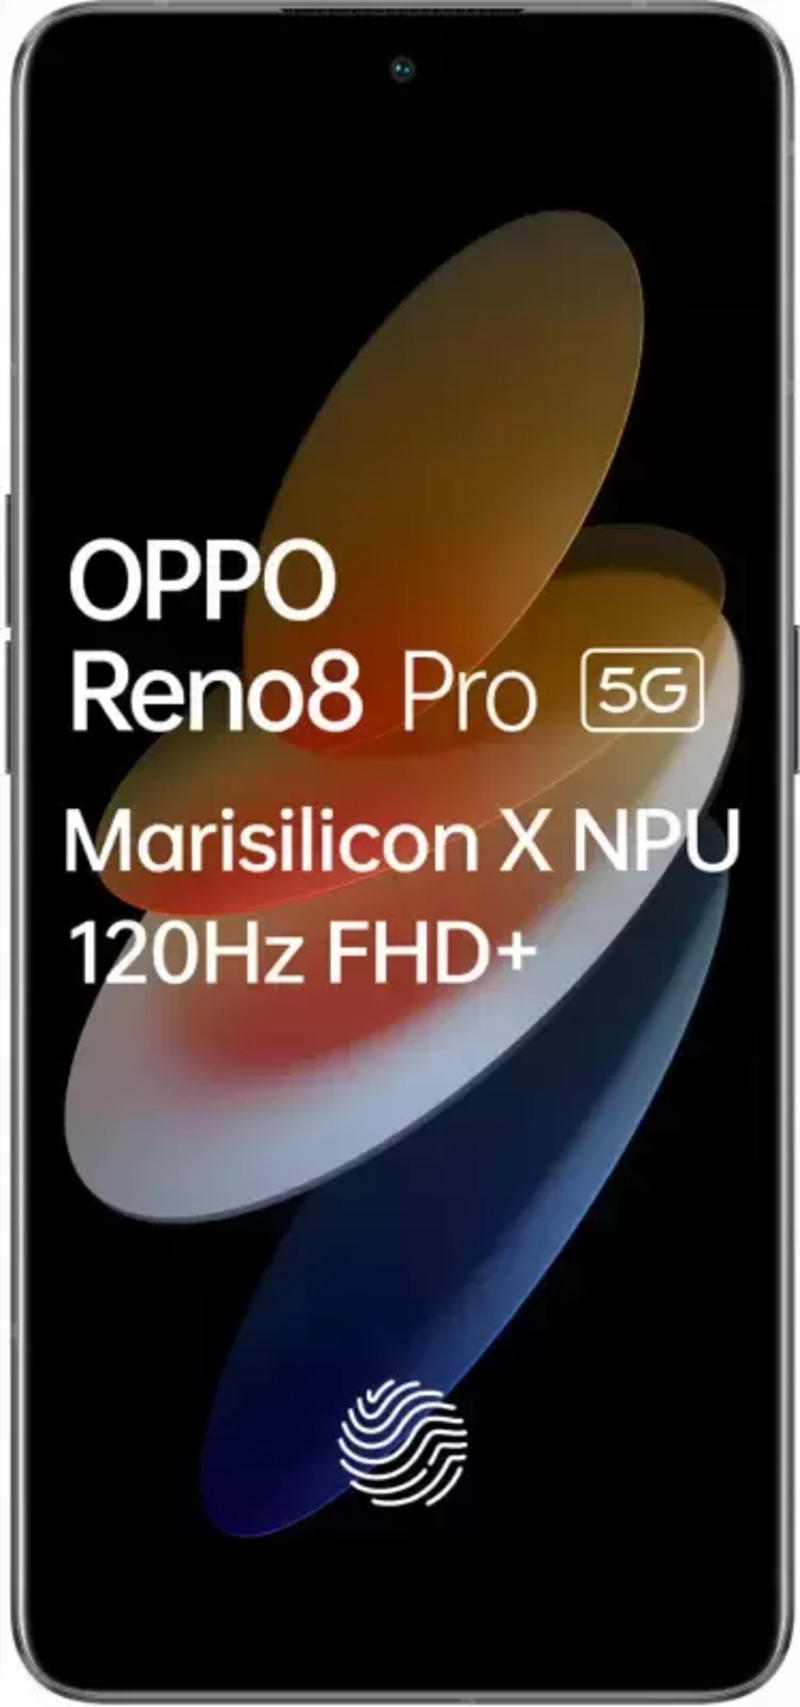 OPPO Reno8 Pro+ vs Redmi Note 11T Pro+: Specs Comparison